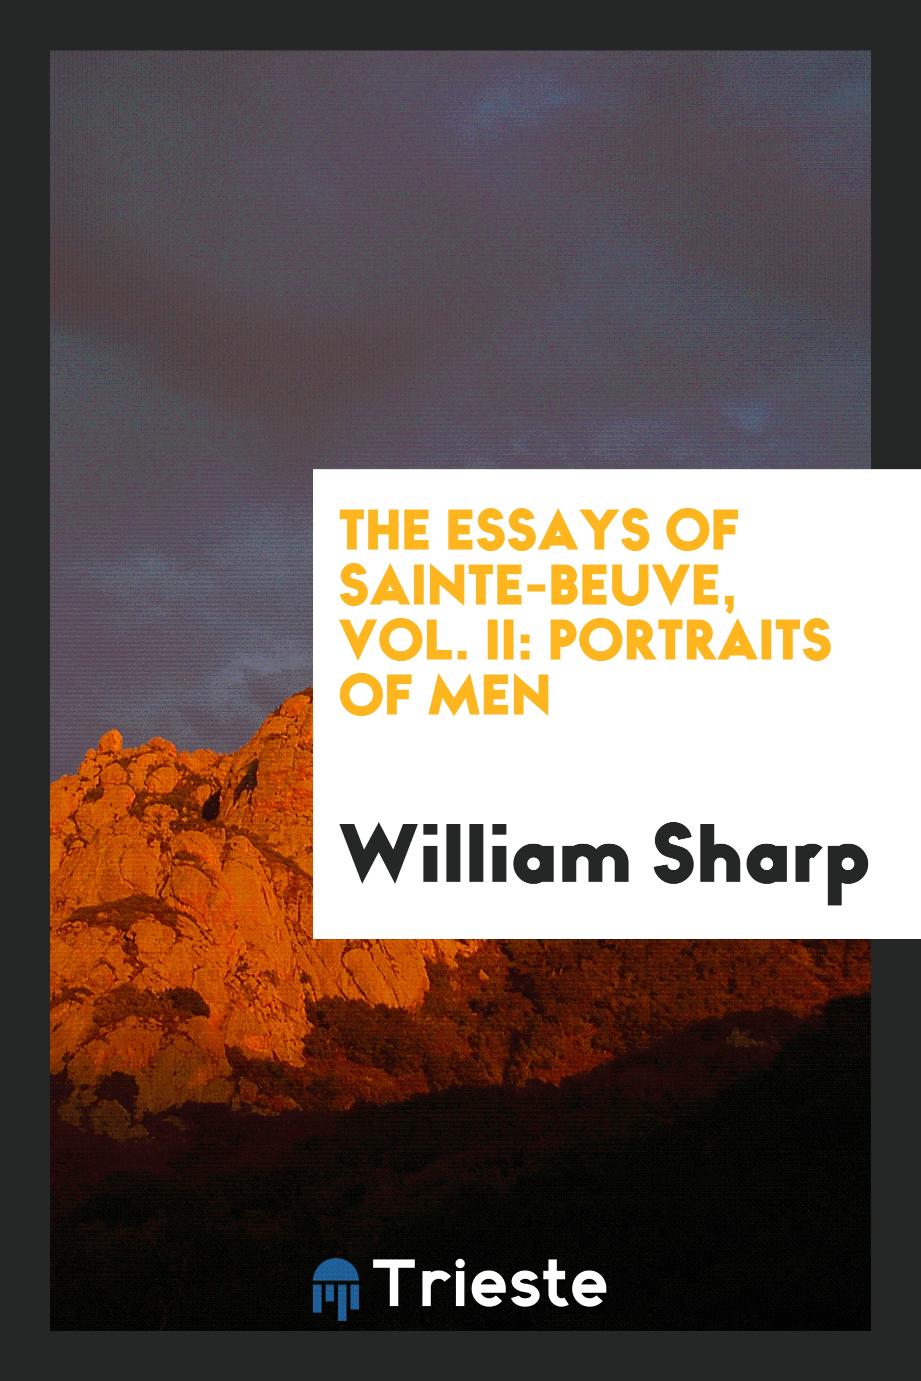 William Sharp - The Essays of Sainte-Beuve, Vol. II: Portraits of Men